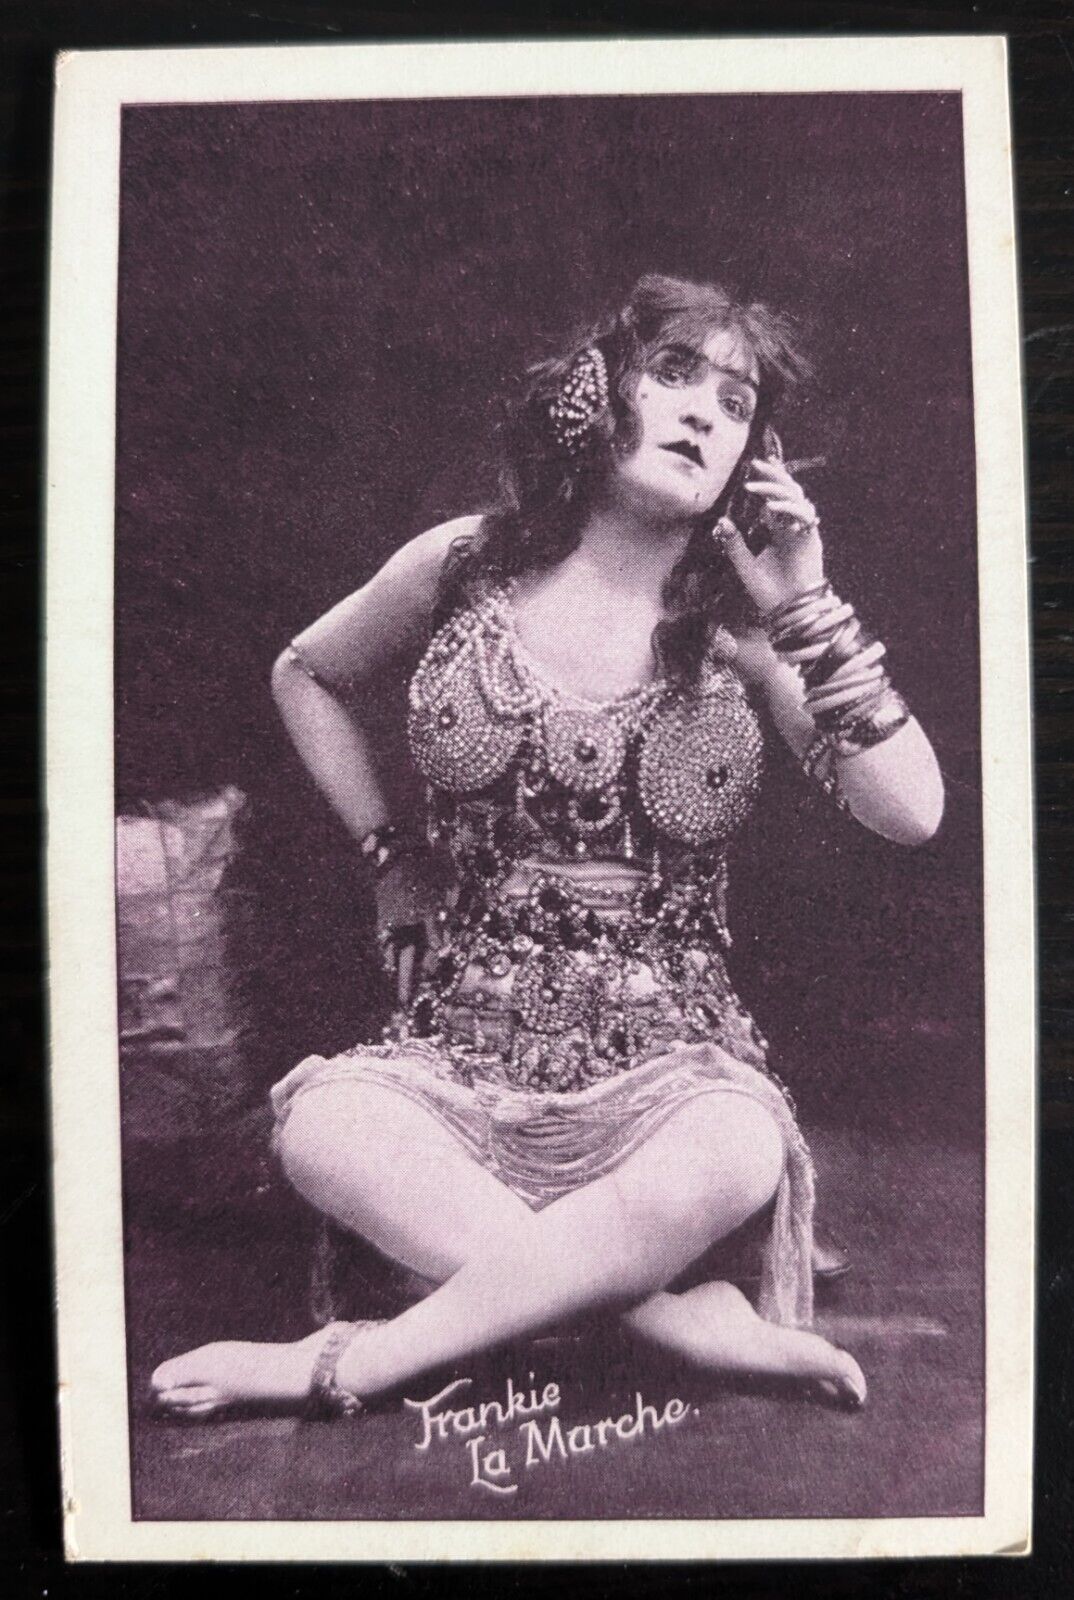 Actress Frankie La Marche Possible Drag Queen Risque Costume Vintage Postcard